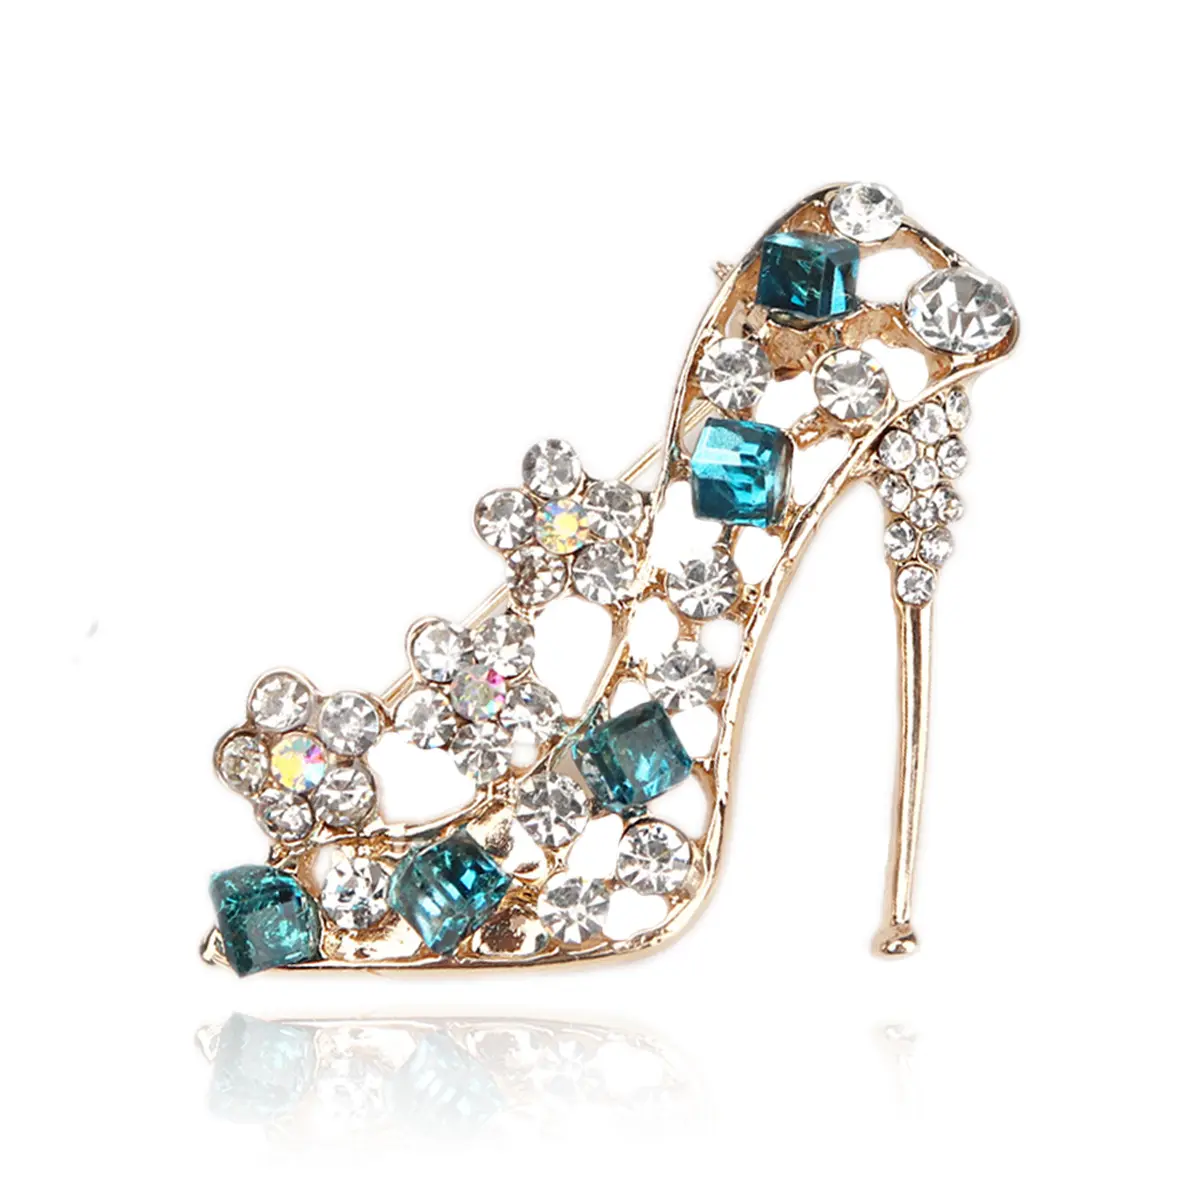 Fashion Style High-Heel Shoe Brooch Rhinestone Crystal Greek Sorority Brooch Pins for Greek Sorority Jewelry